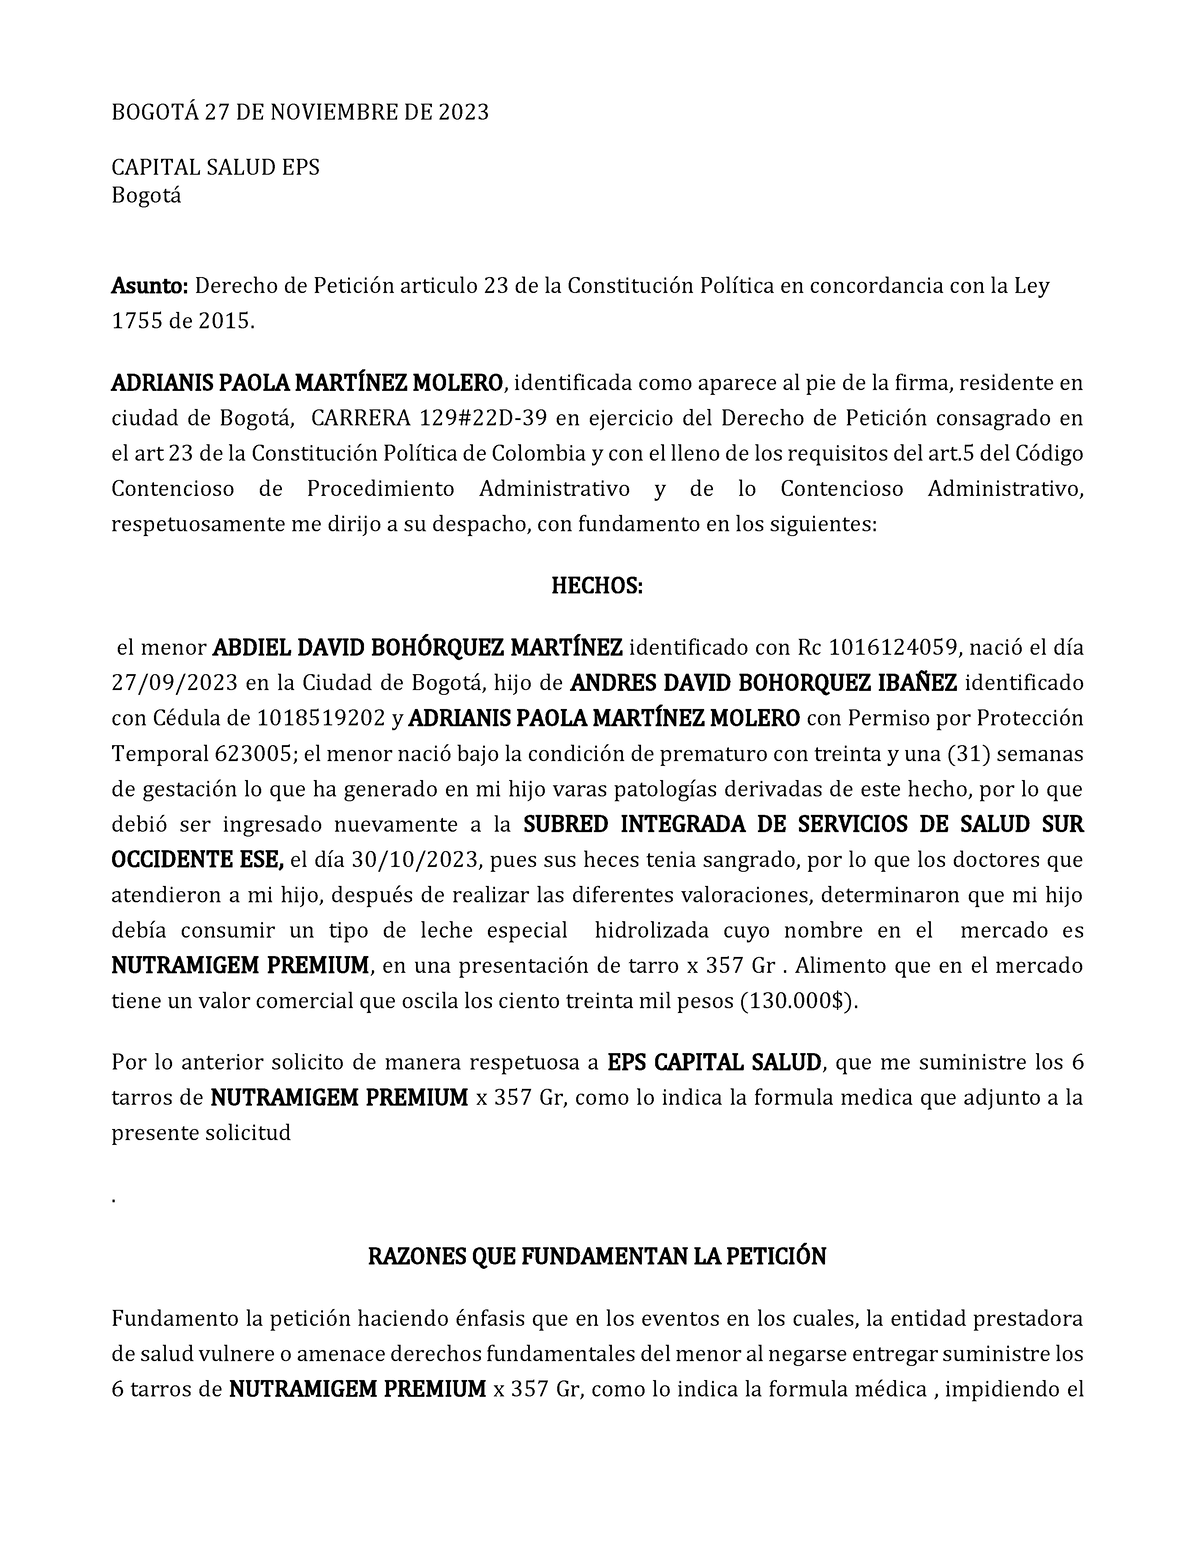 Derecho DE Peticion Abdiel Bohorquez - BOGOTÁ 27 DE NOVIEMBRE DE 2023 ...